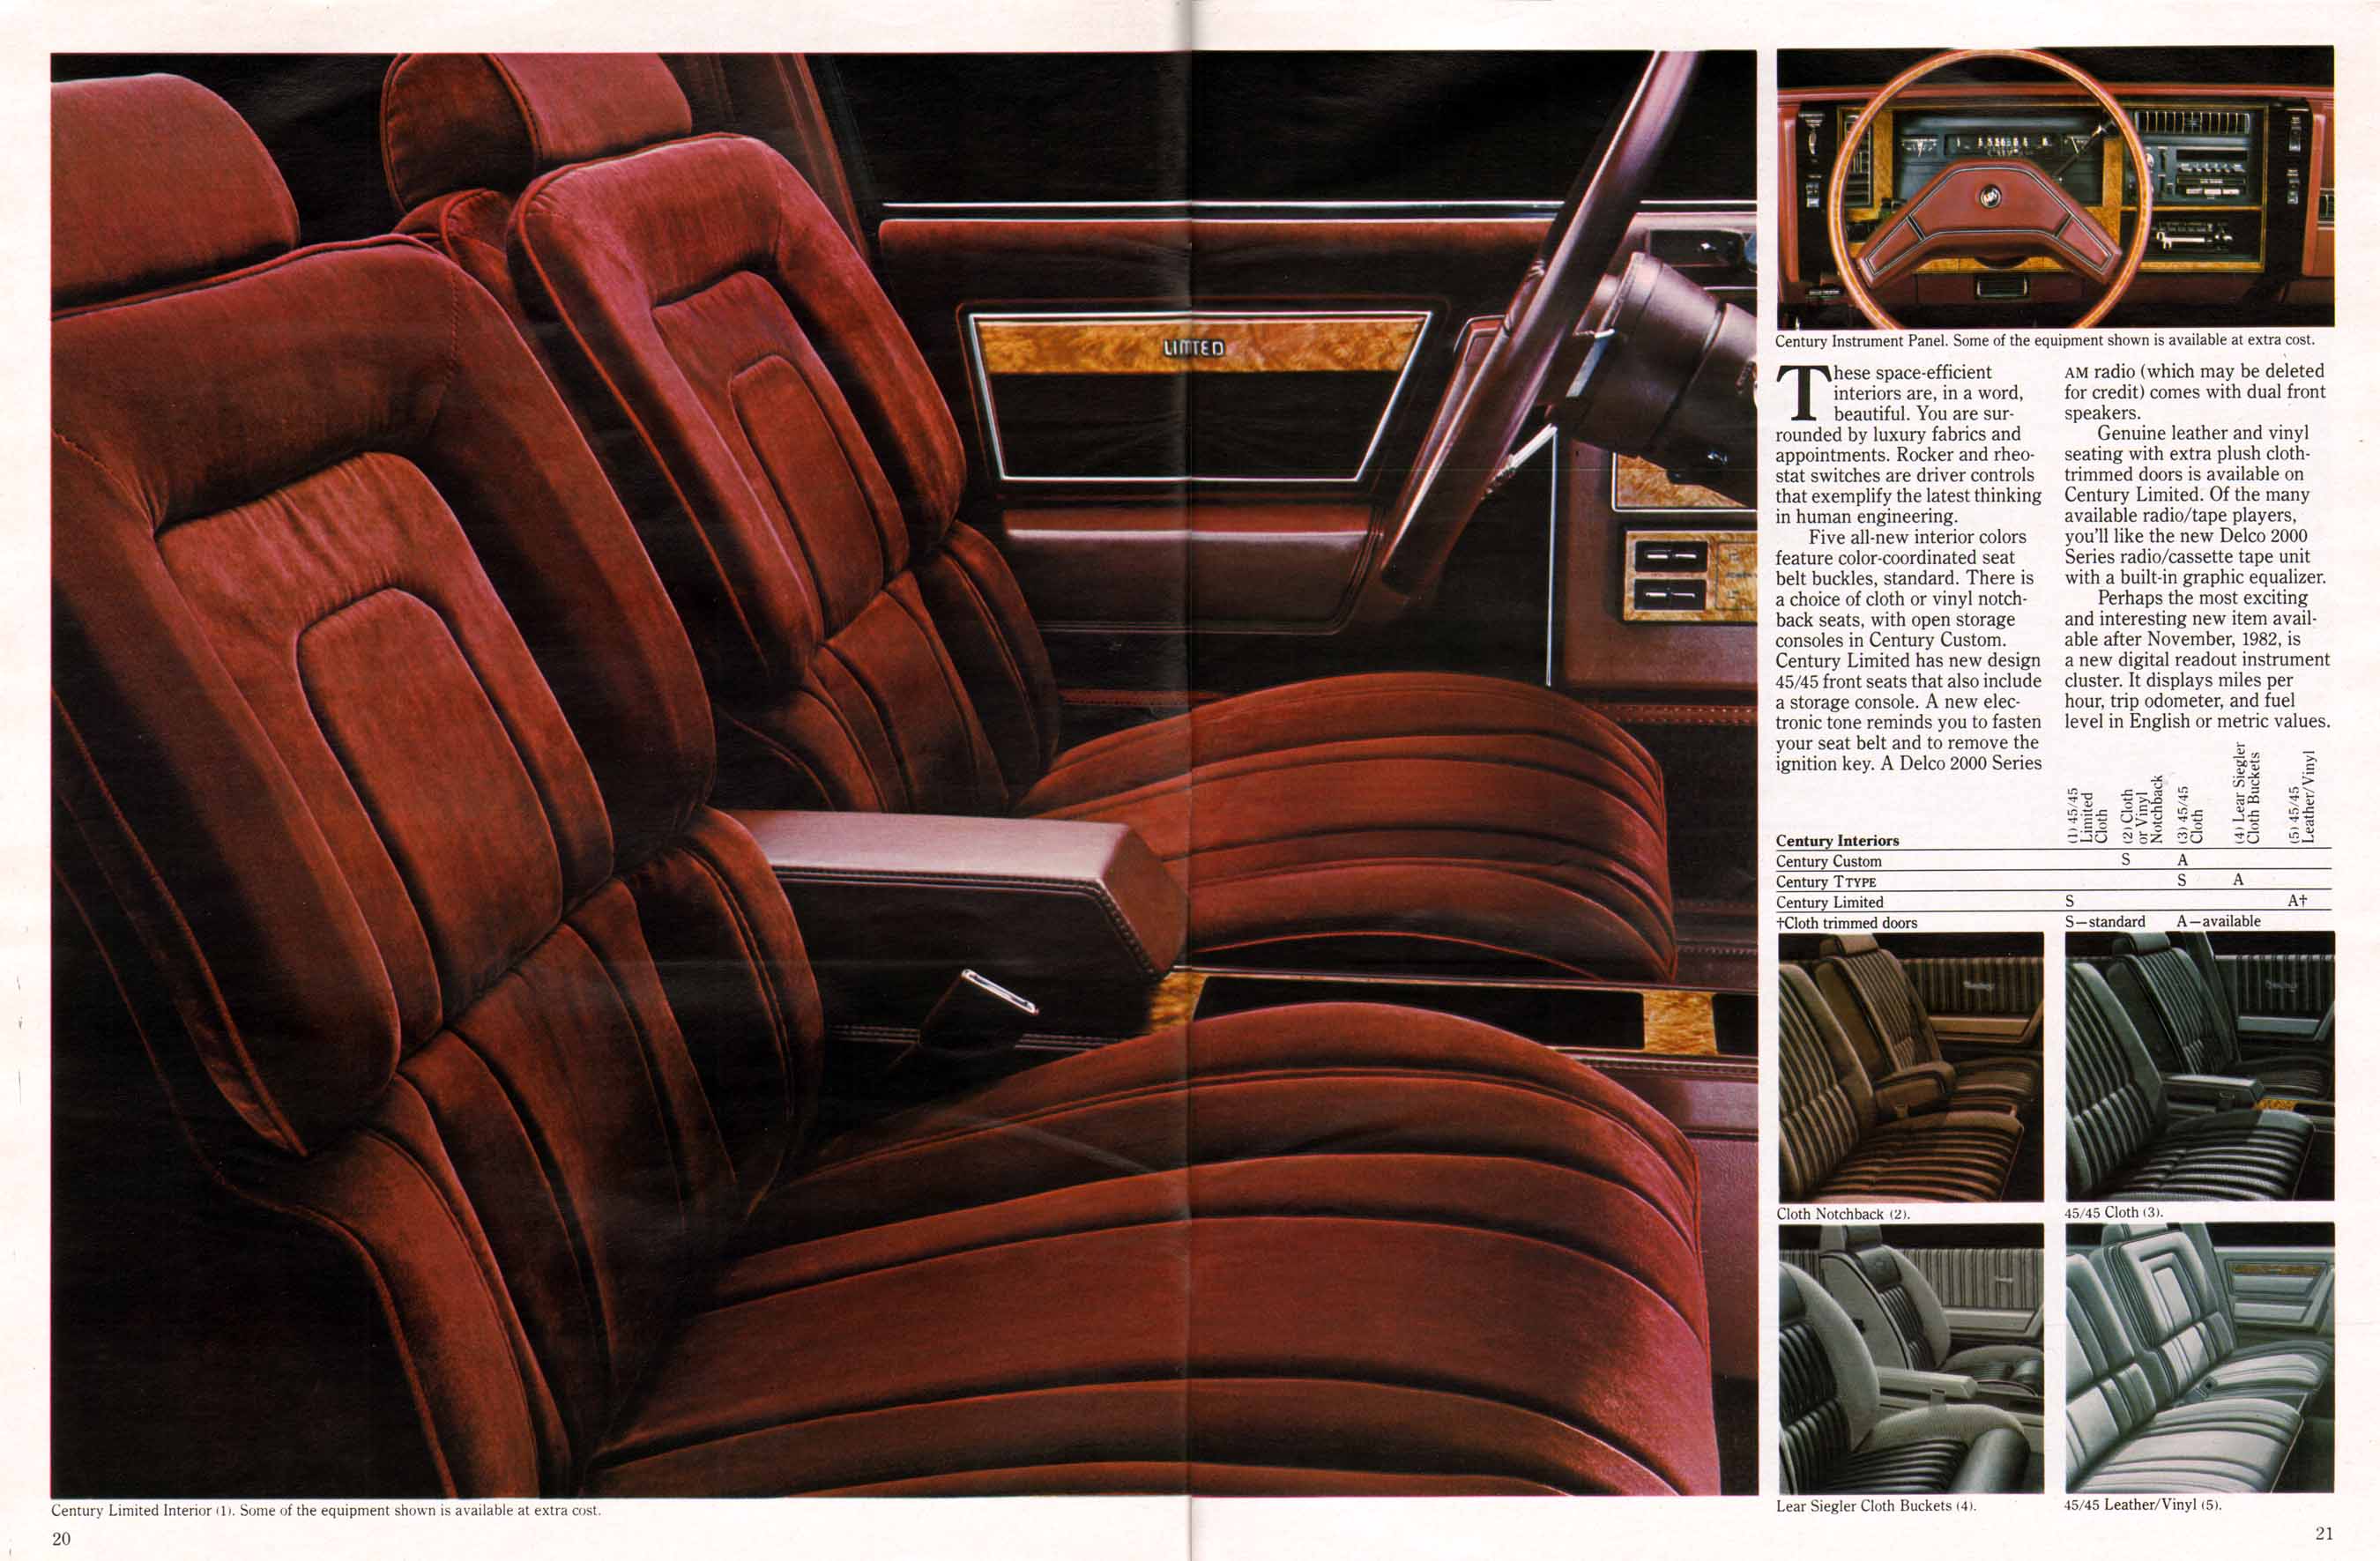 1983 Buick Full Line Prestige-20-21